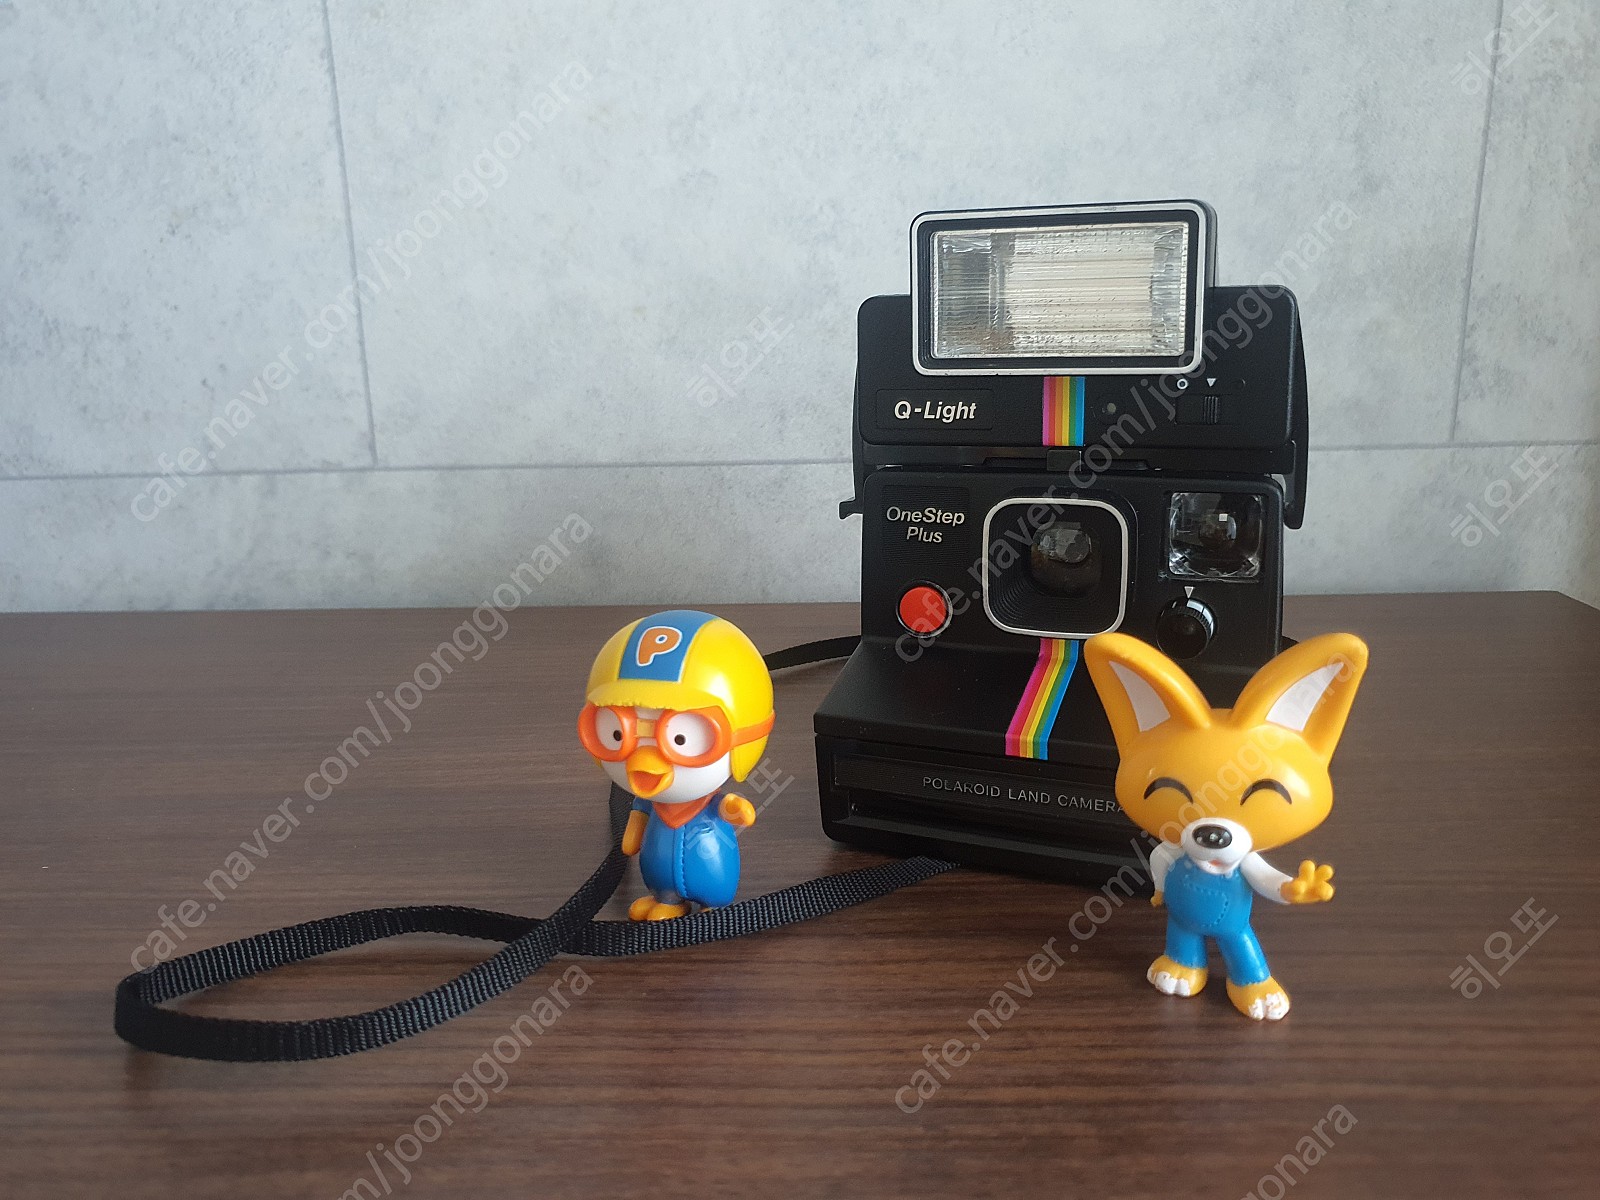 빈티지-﻿폴라로이드 원스텝 플러스 ( Polaroid One Step Plus) + Q-Light 2351